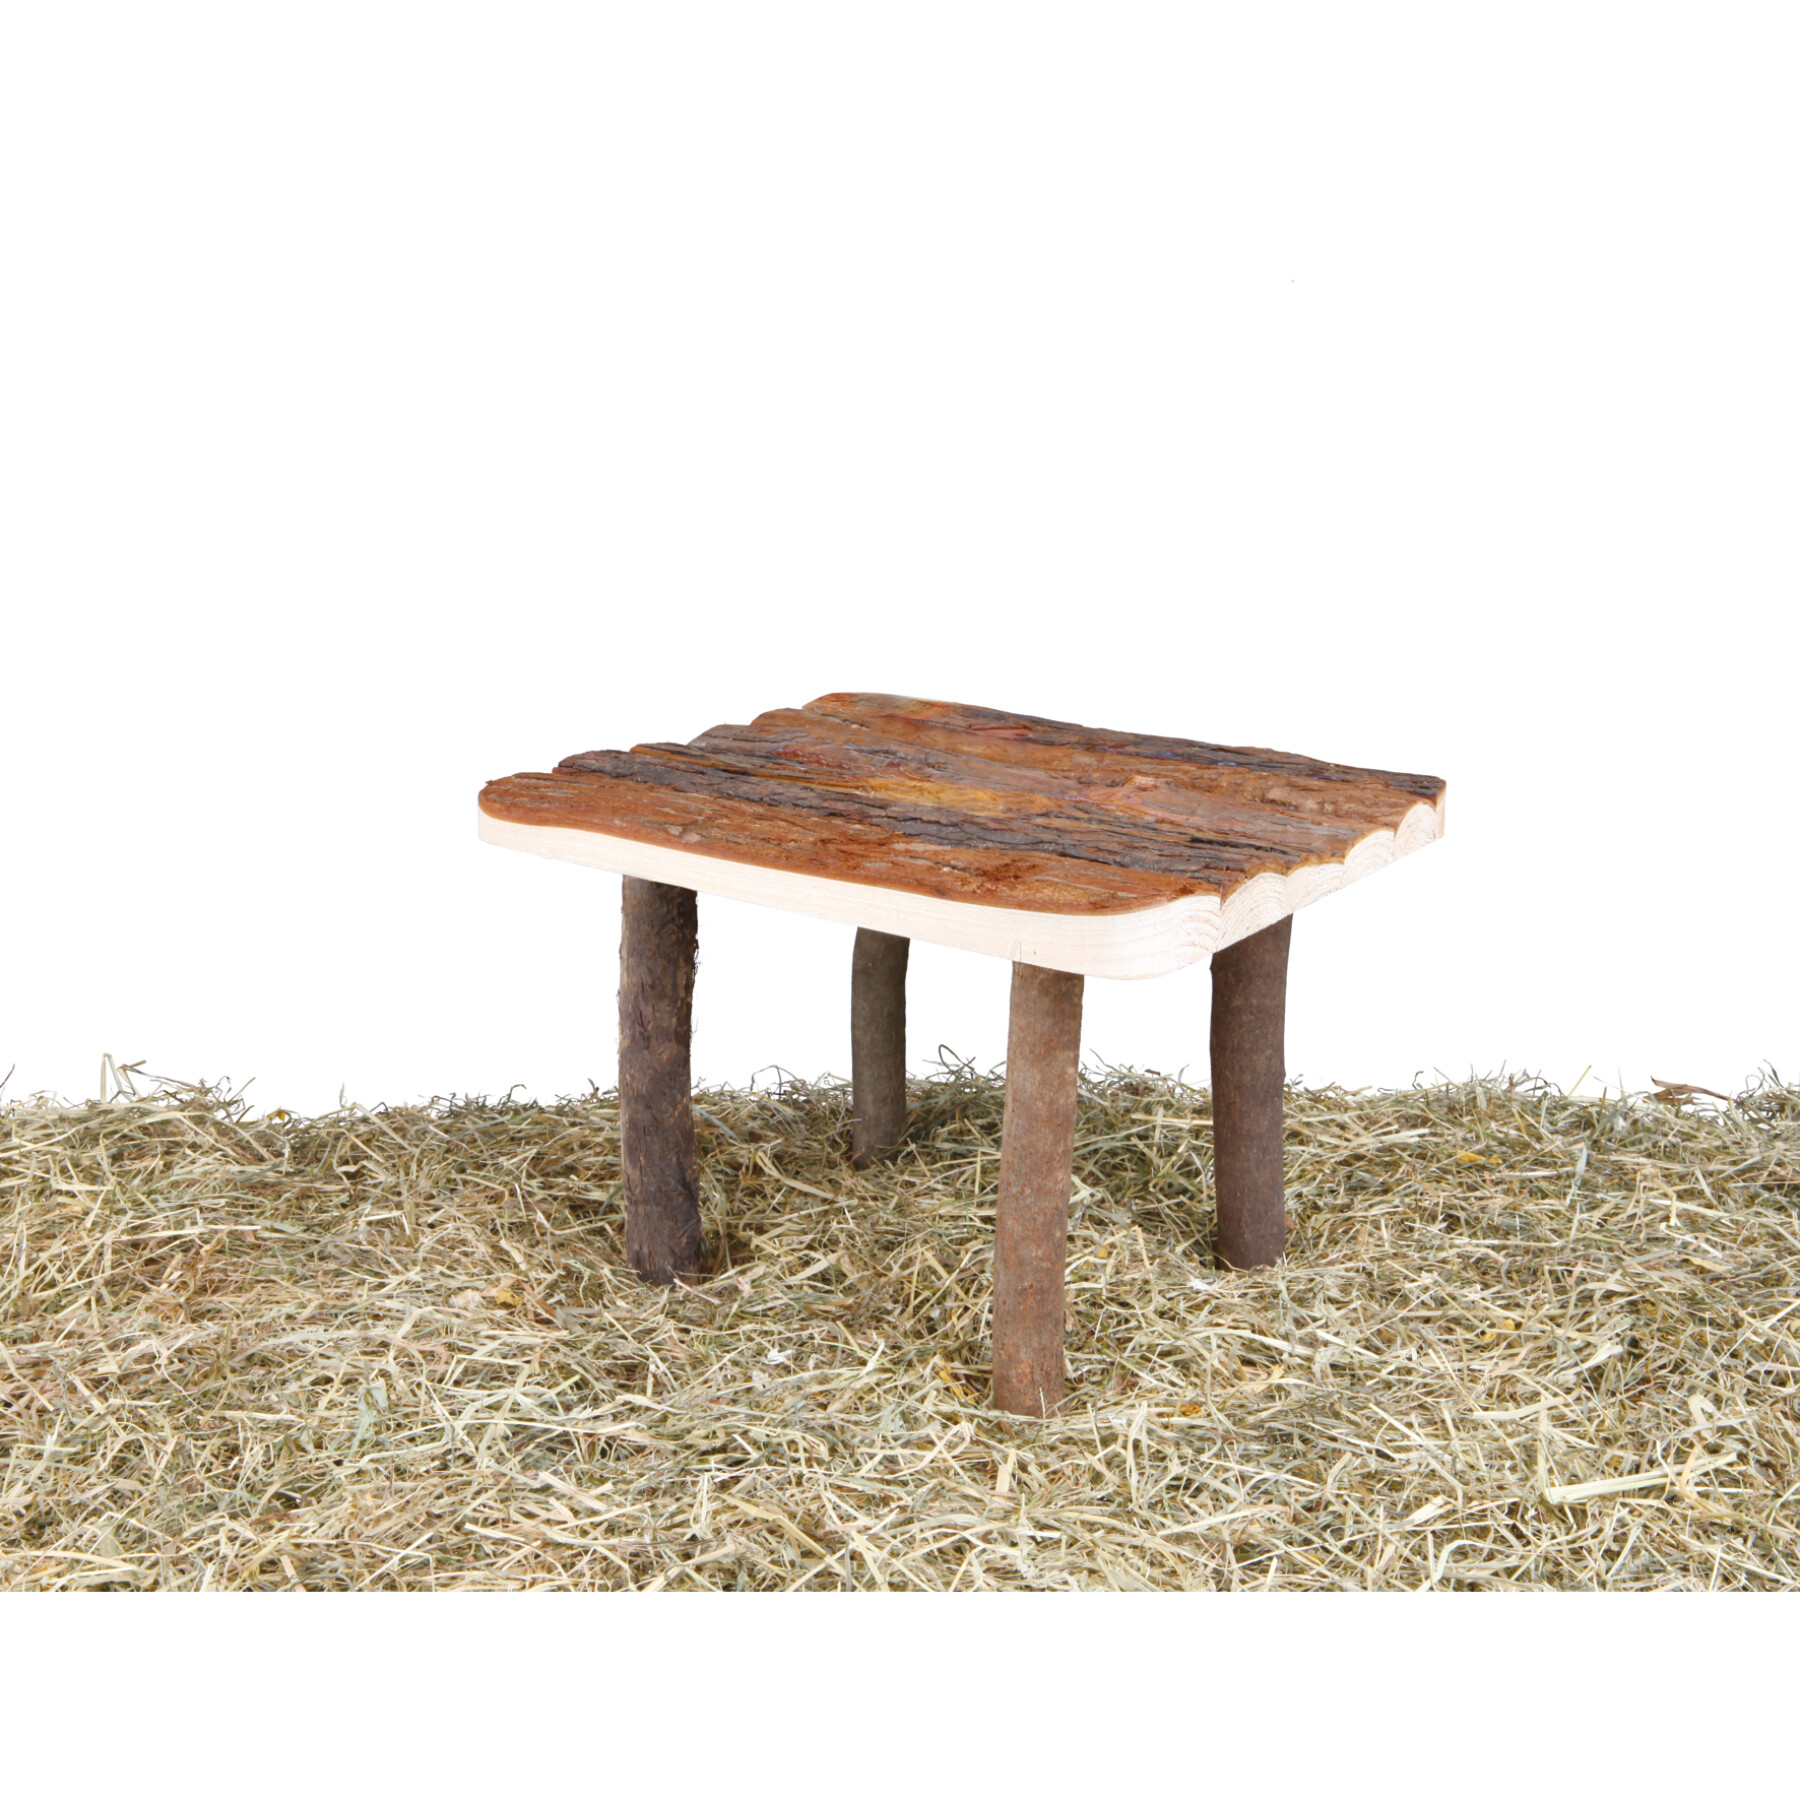 Abrigo e plataforma para roedores, madeira de casca de árvore Trixie Chinchilla (x2)